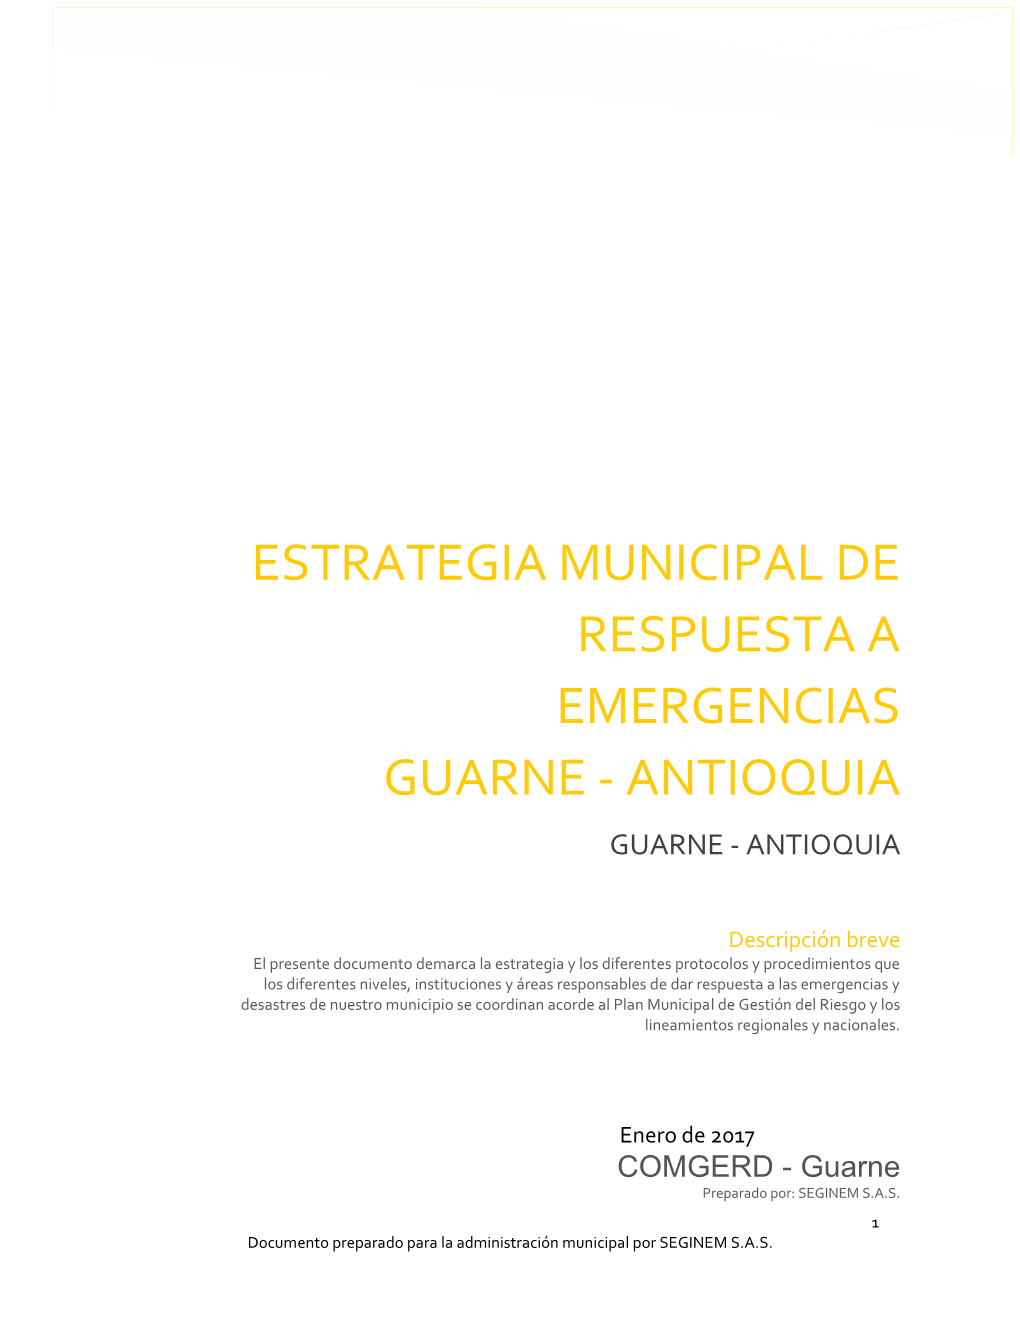 Estrategia Municipal De Respuesta a Emergencias Guarne – Antioquia - 2017